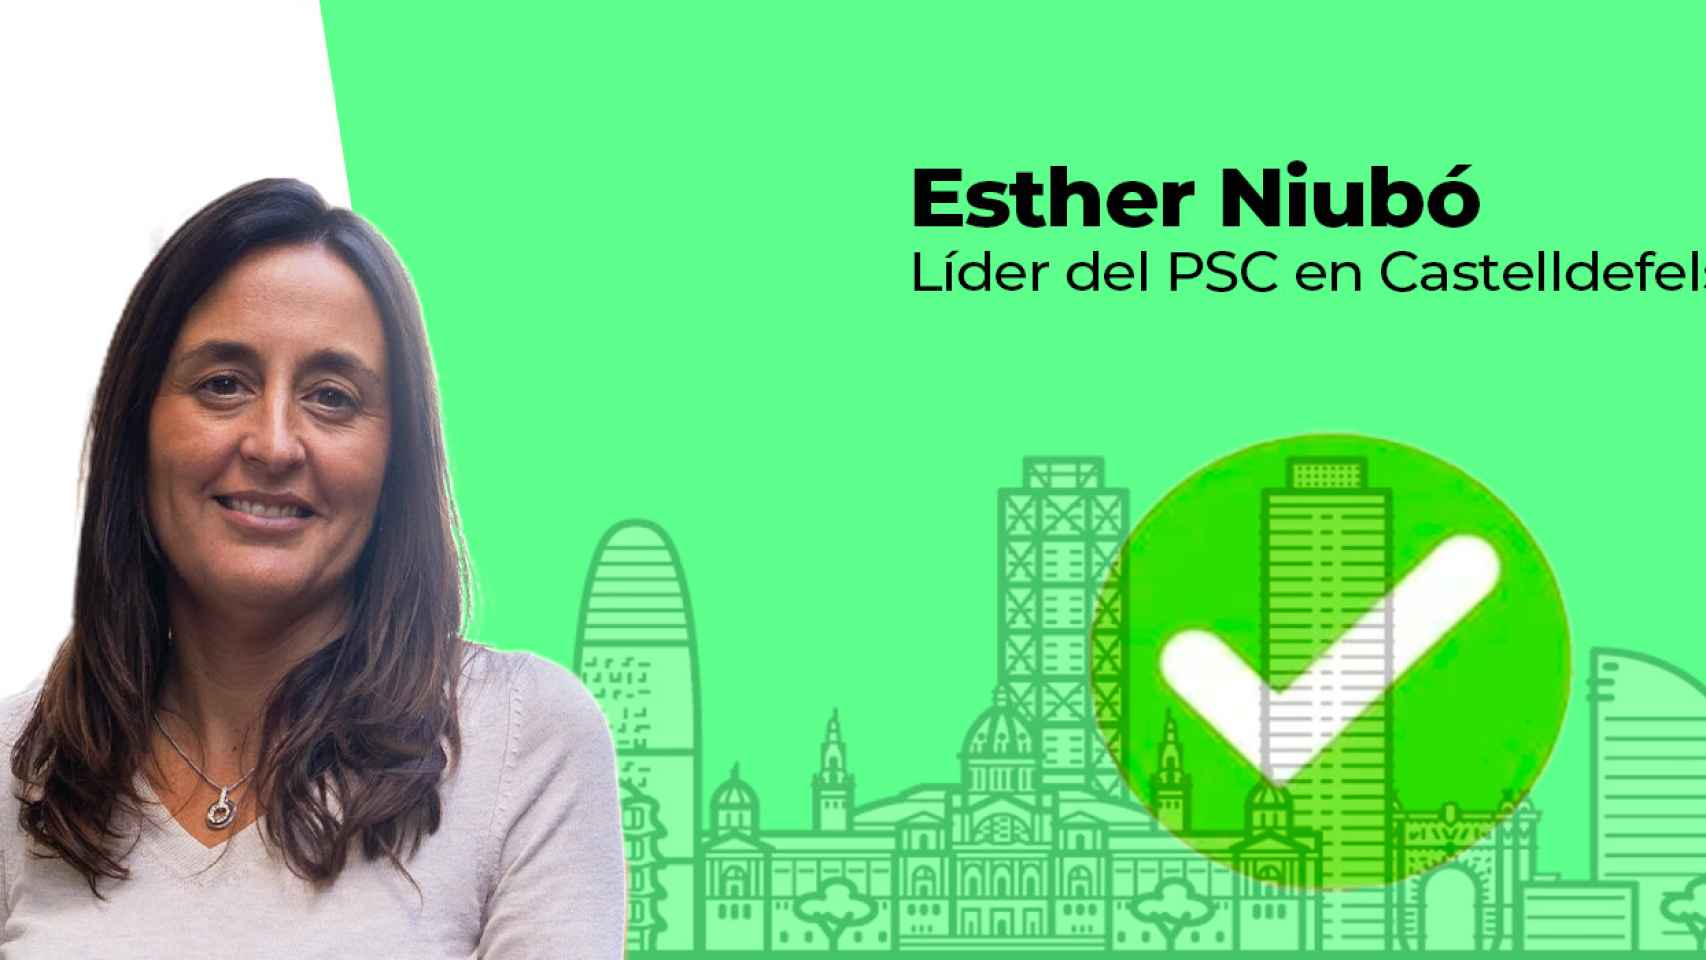 La líder del PSC en Castelldefels, Esther Niubó